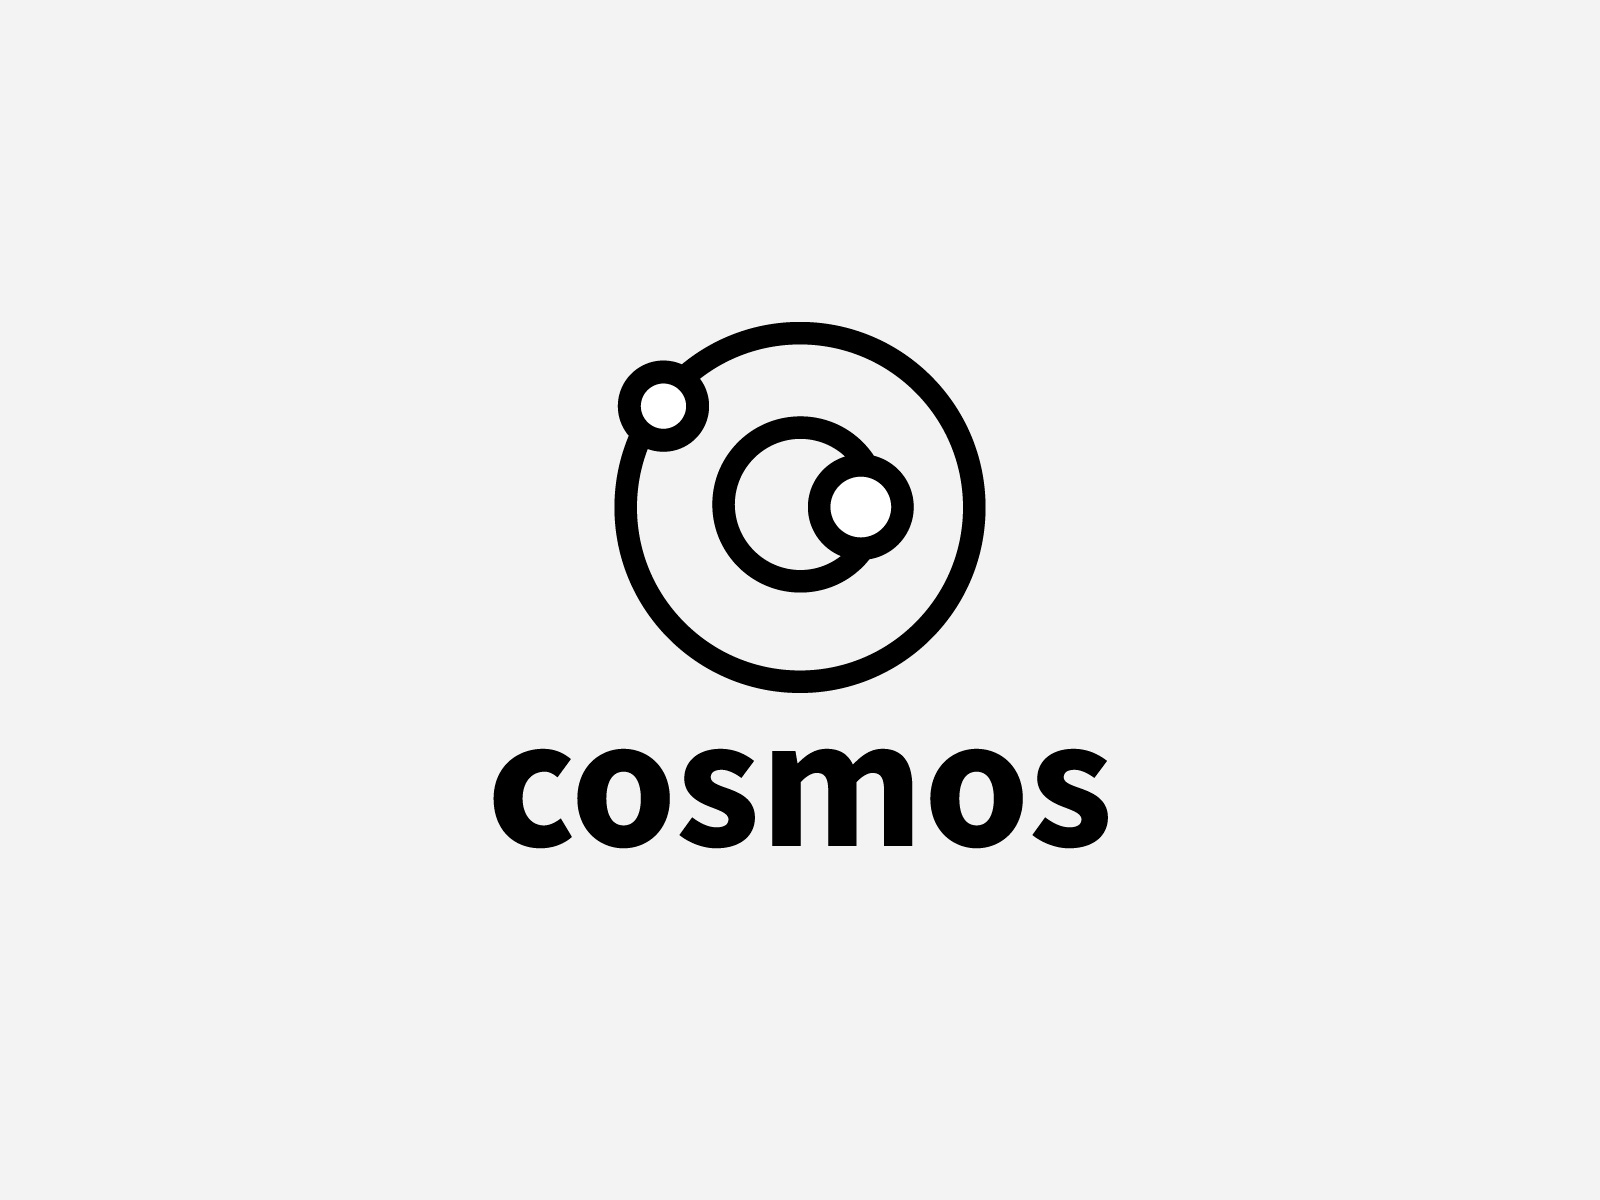 Cosmos by Sergei Ermilov on Dribbble